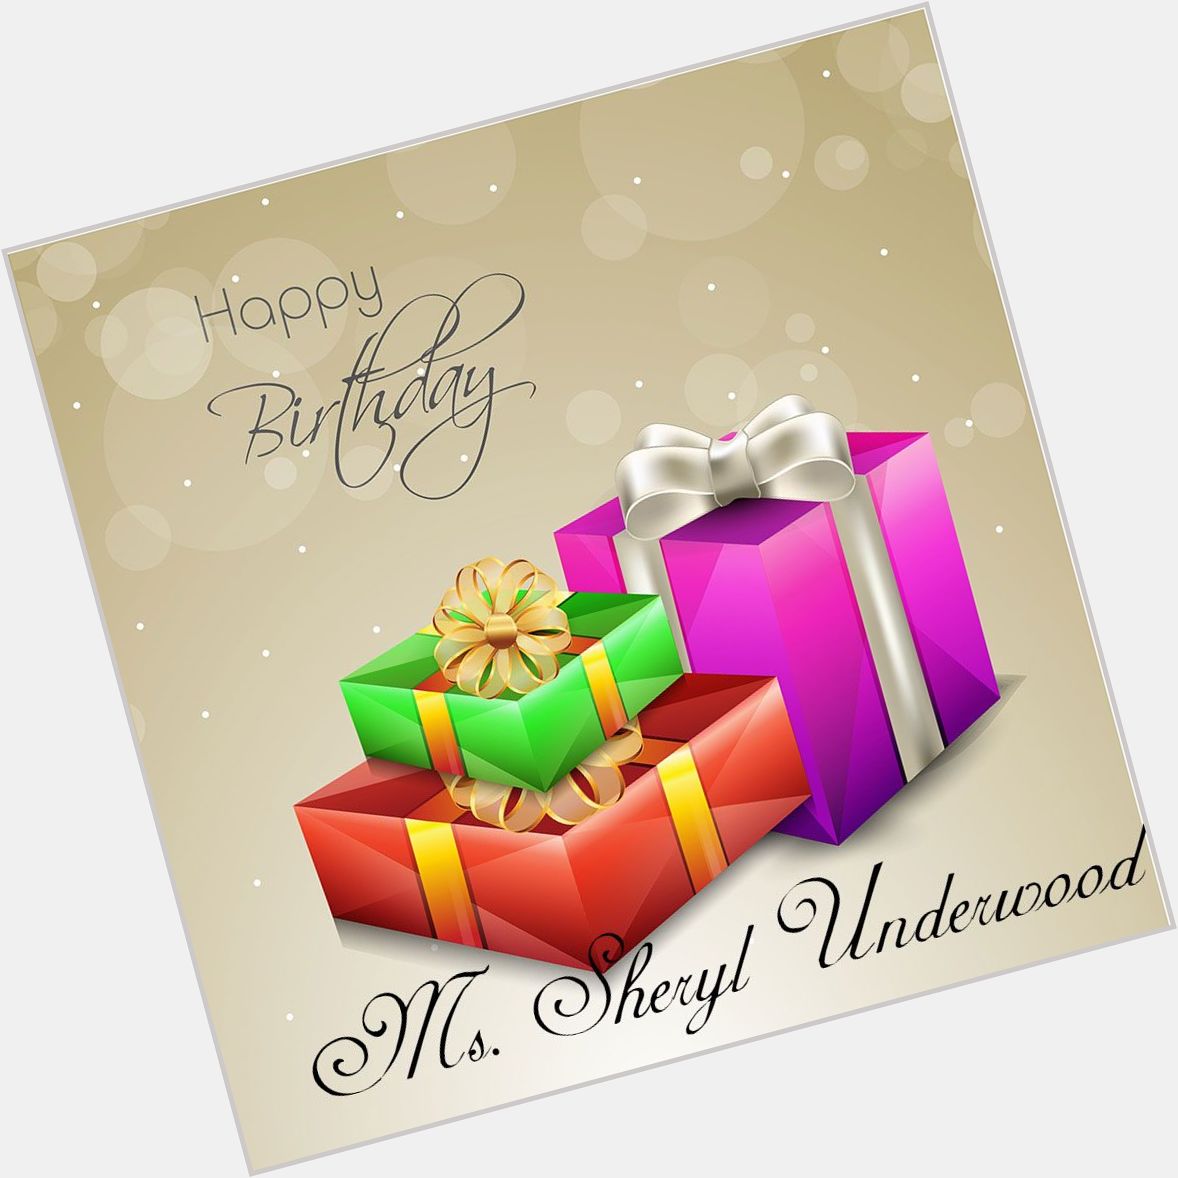 Happy Birthday - Sheryl Underwood 